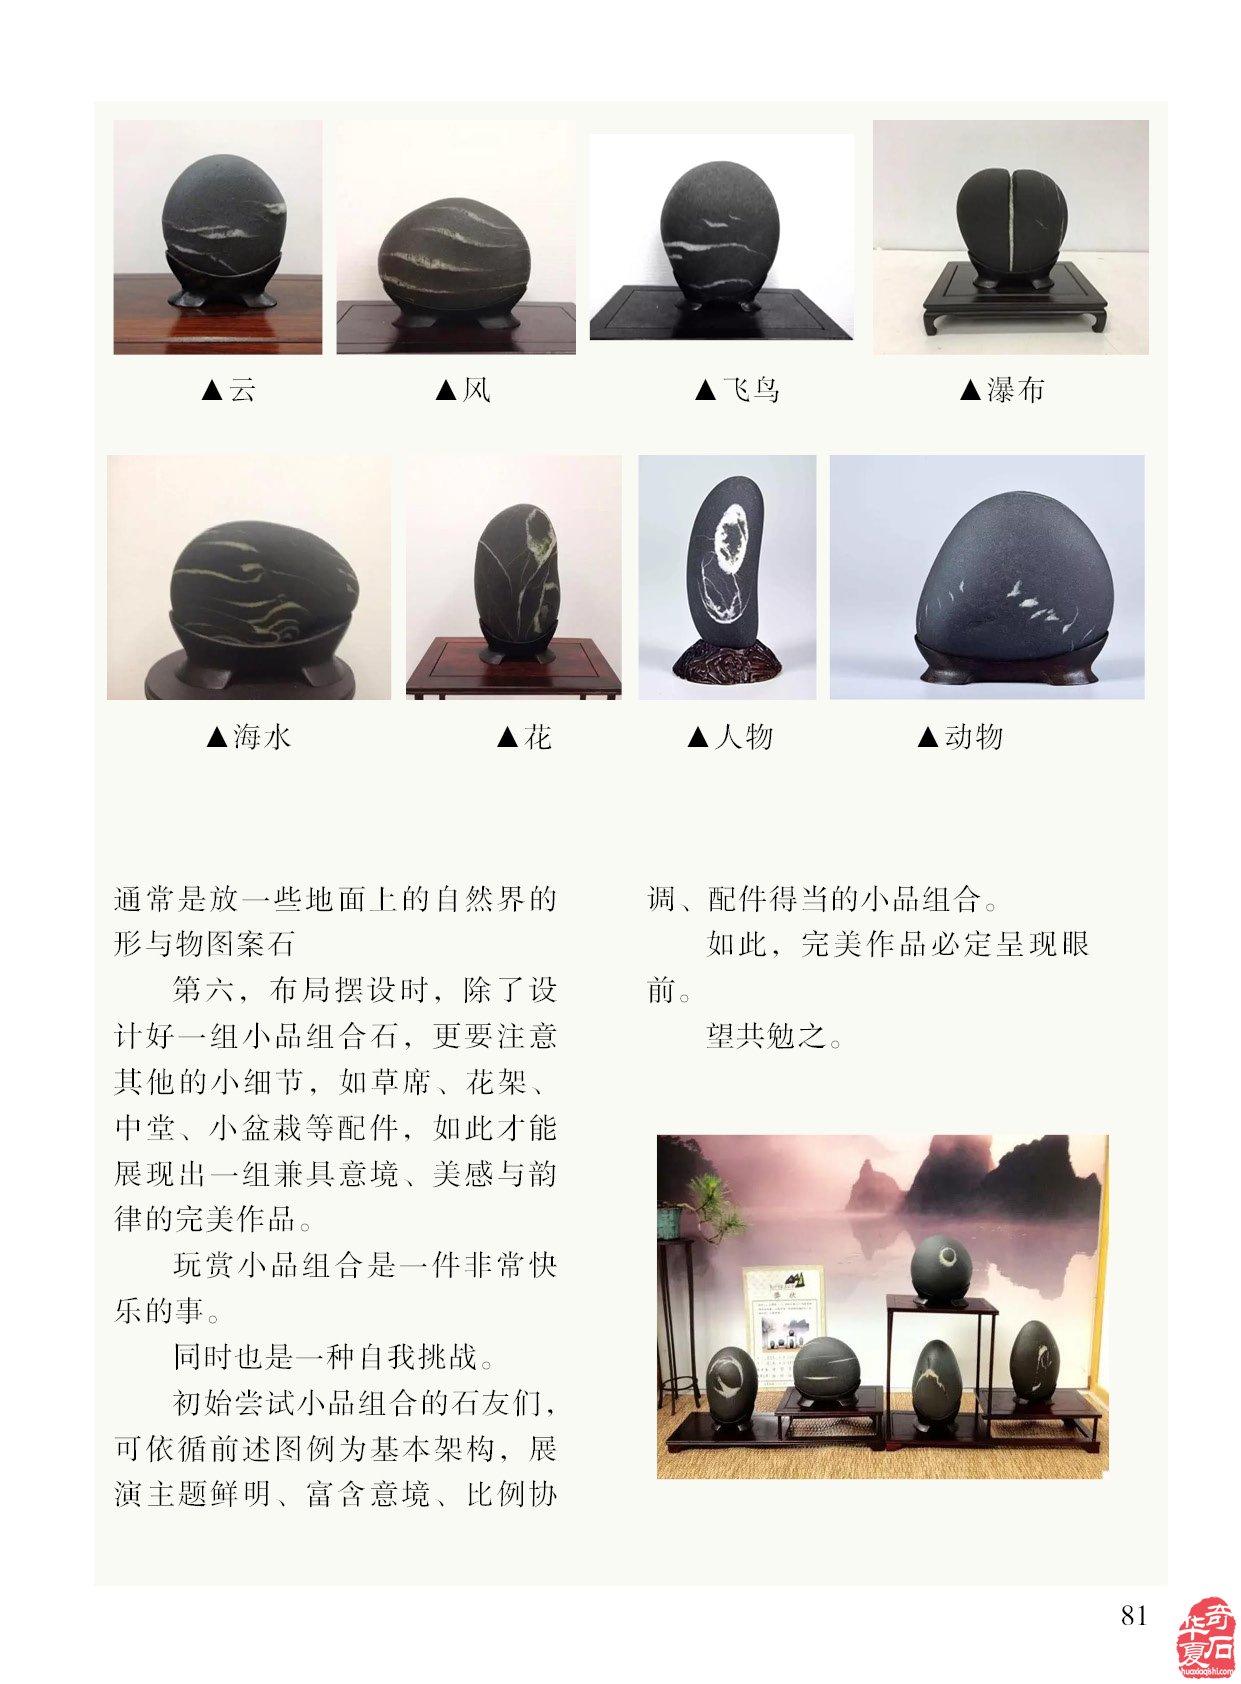 台湾图案石小品组合石怎么欣赏《于公赏石》告诉你